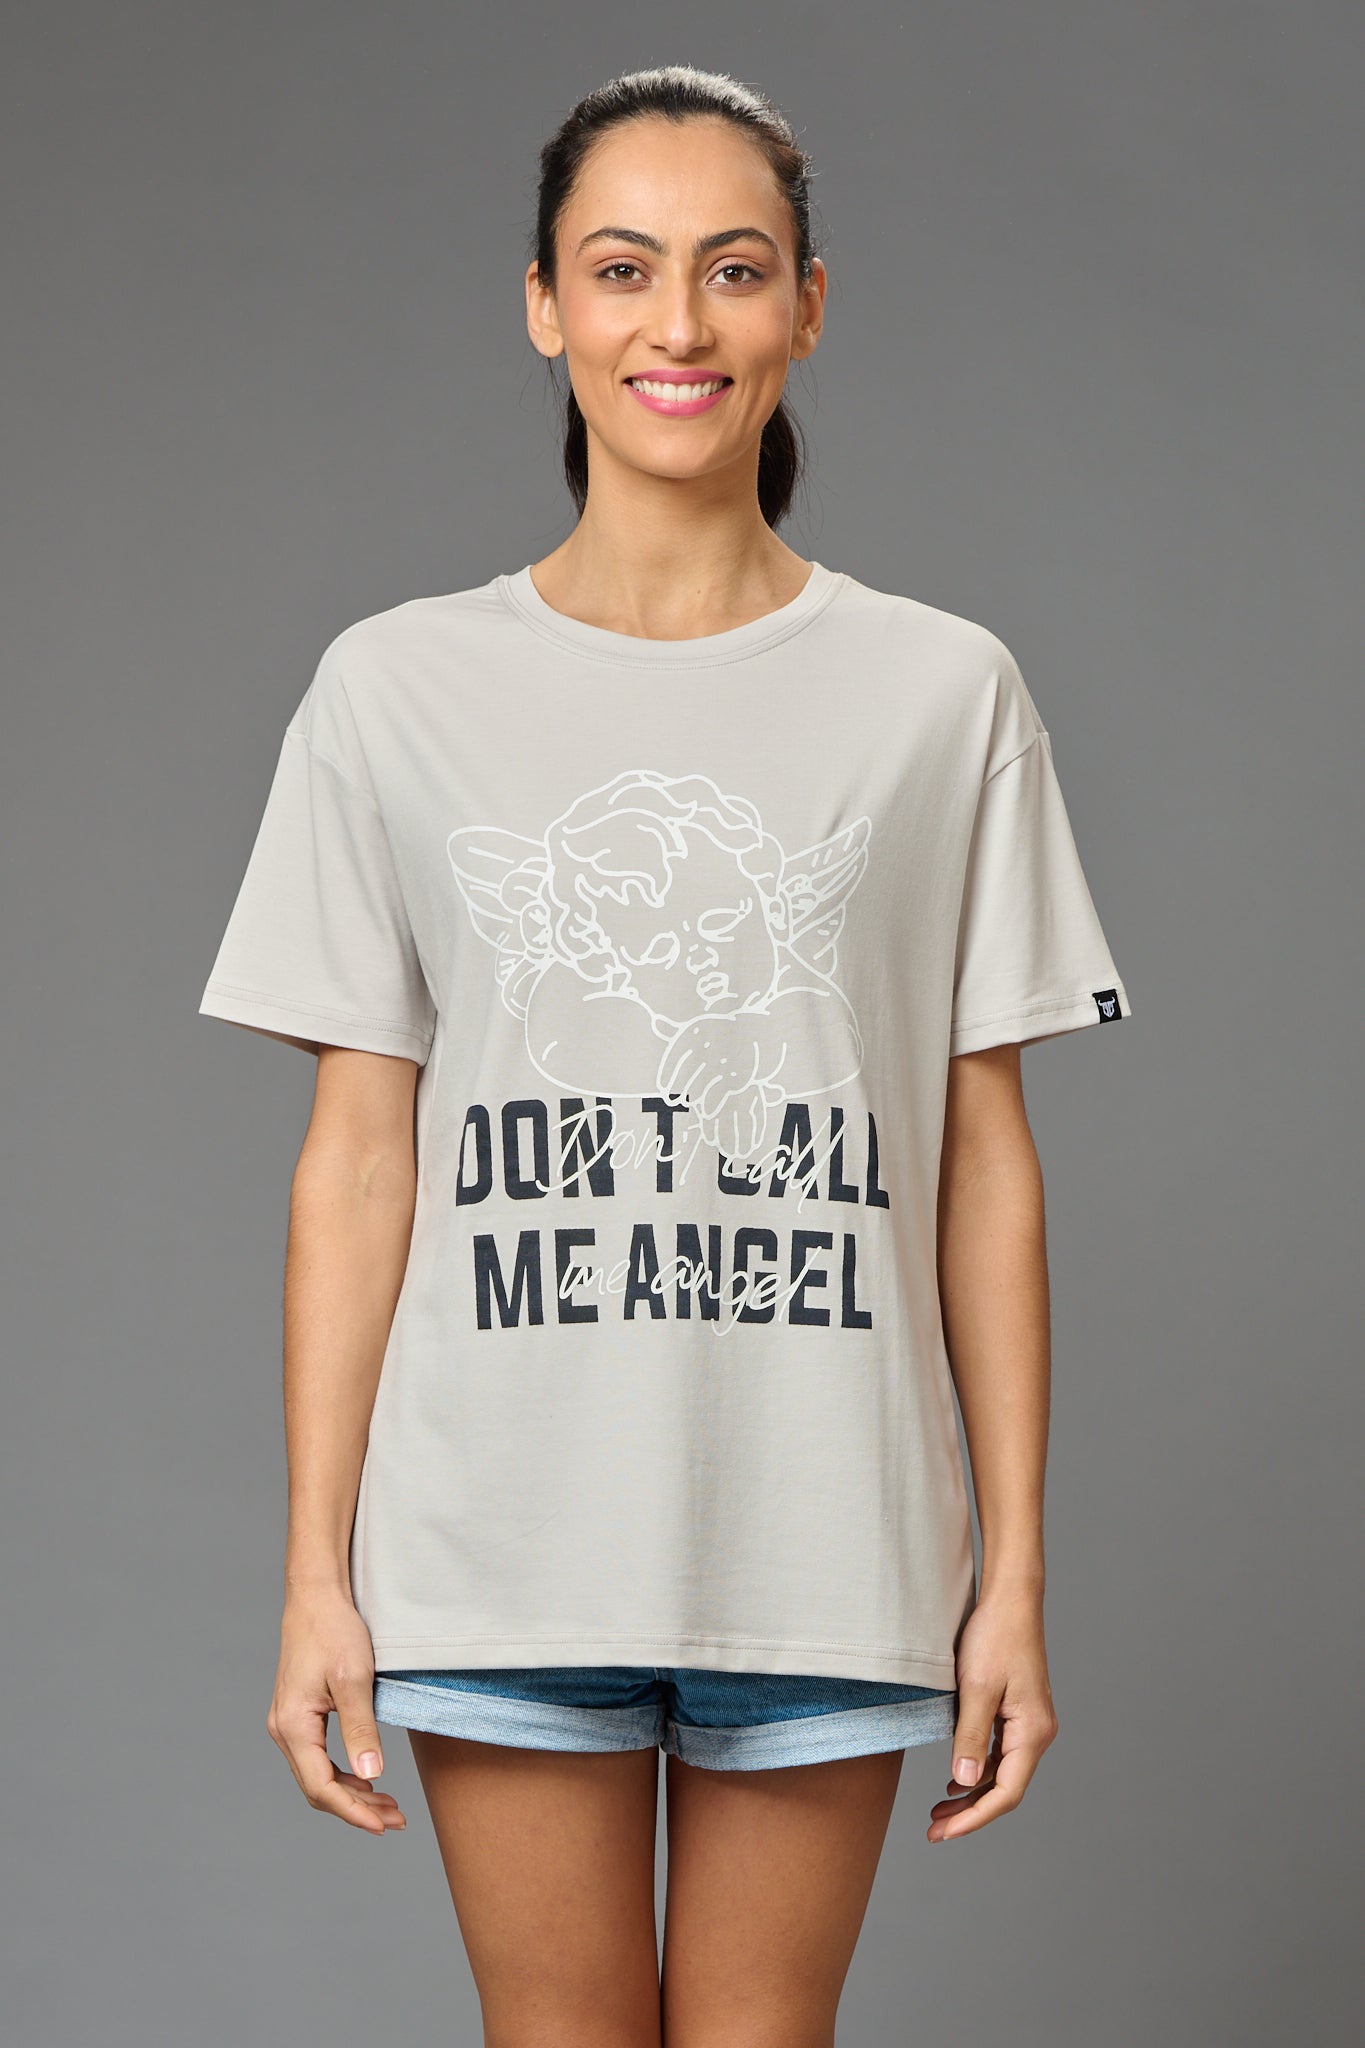 Don't Call me Angel Printed White Oversized T-Shirt for Women - Go Devil